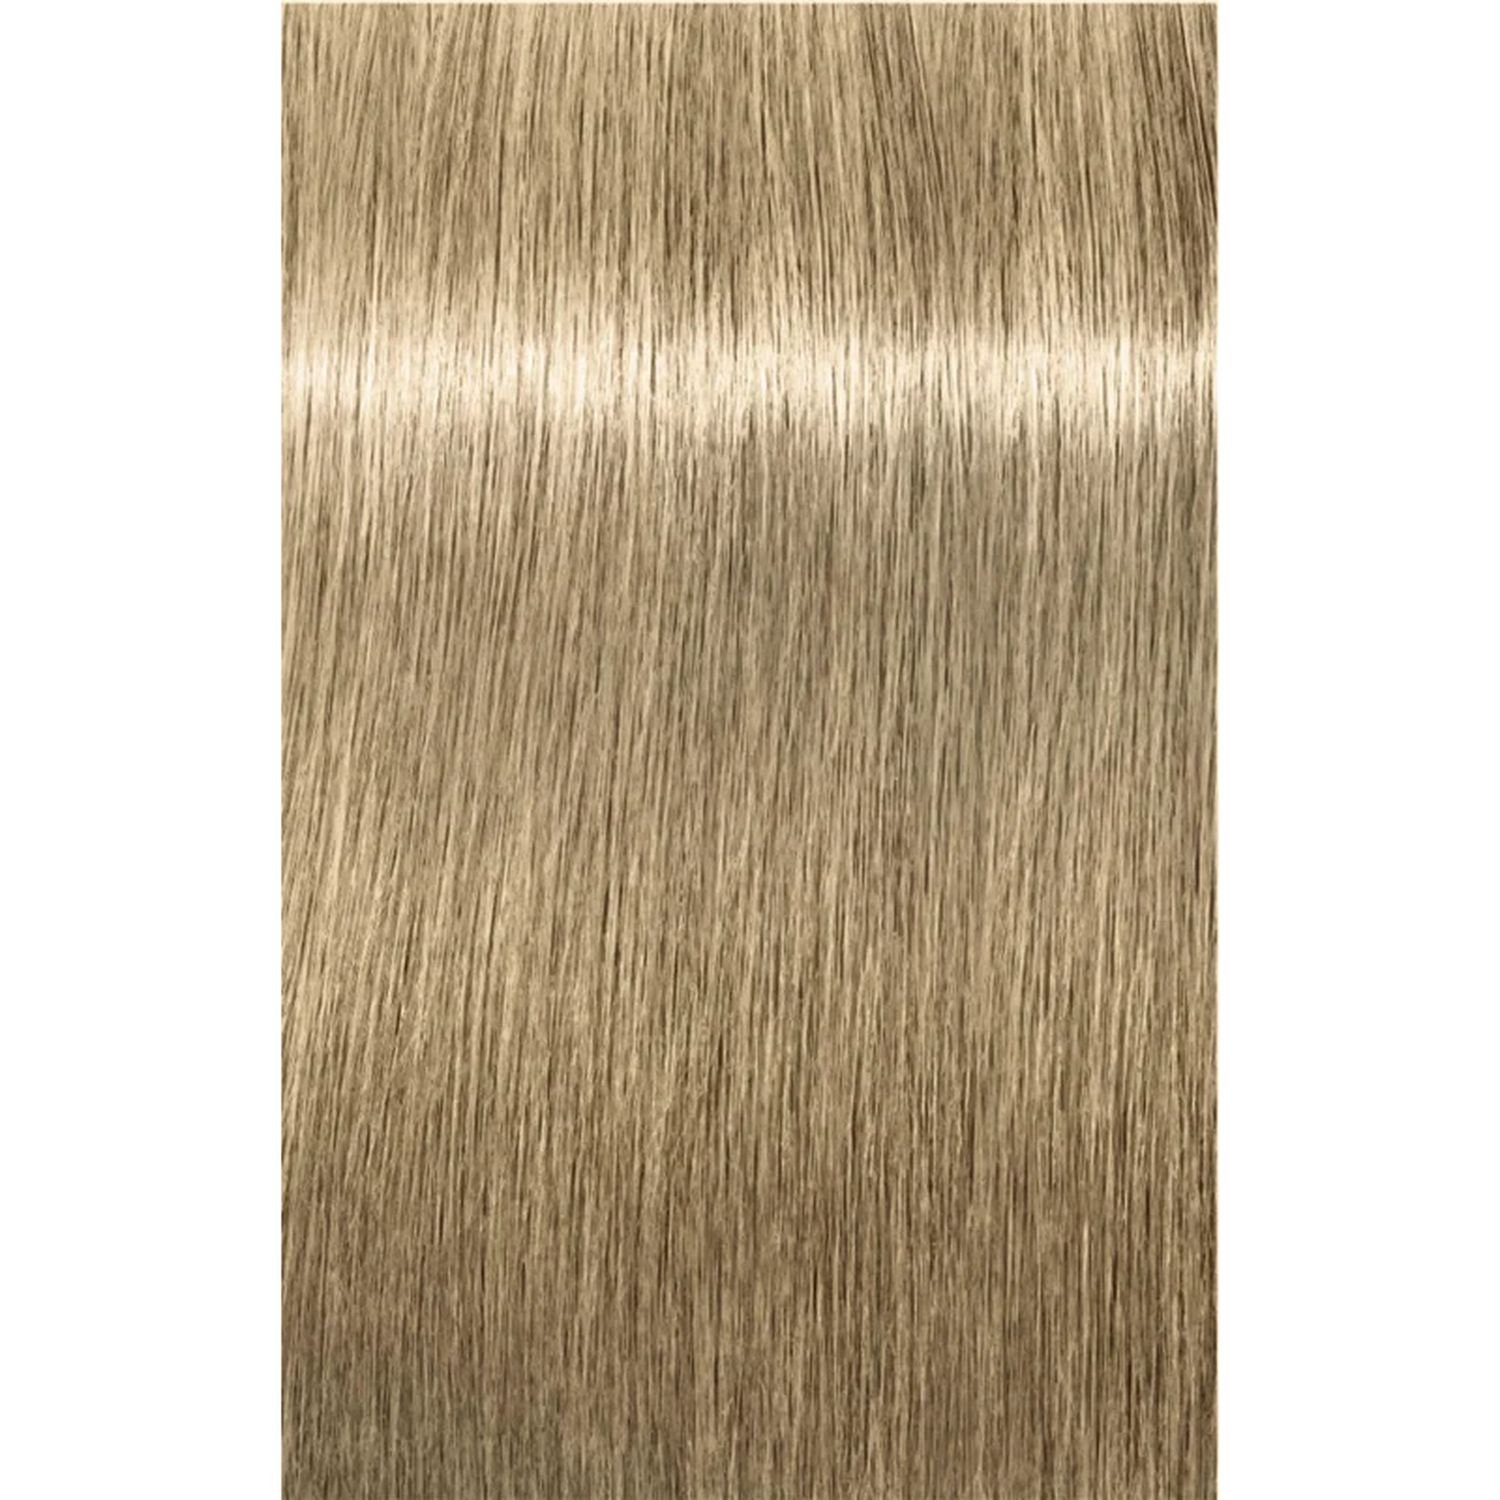 Освітлюючий бондінг-крем волосся Schwarzkopf Professional BlondMe Bond Enforcing Lift&Blend, тон ірис, 60 мл - фото 2